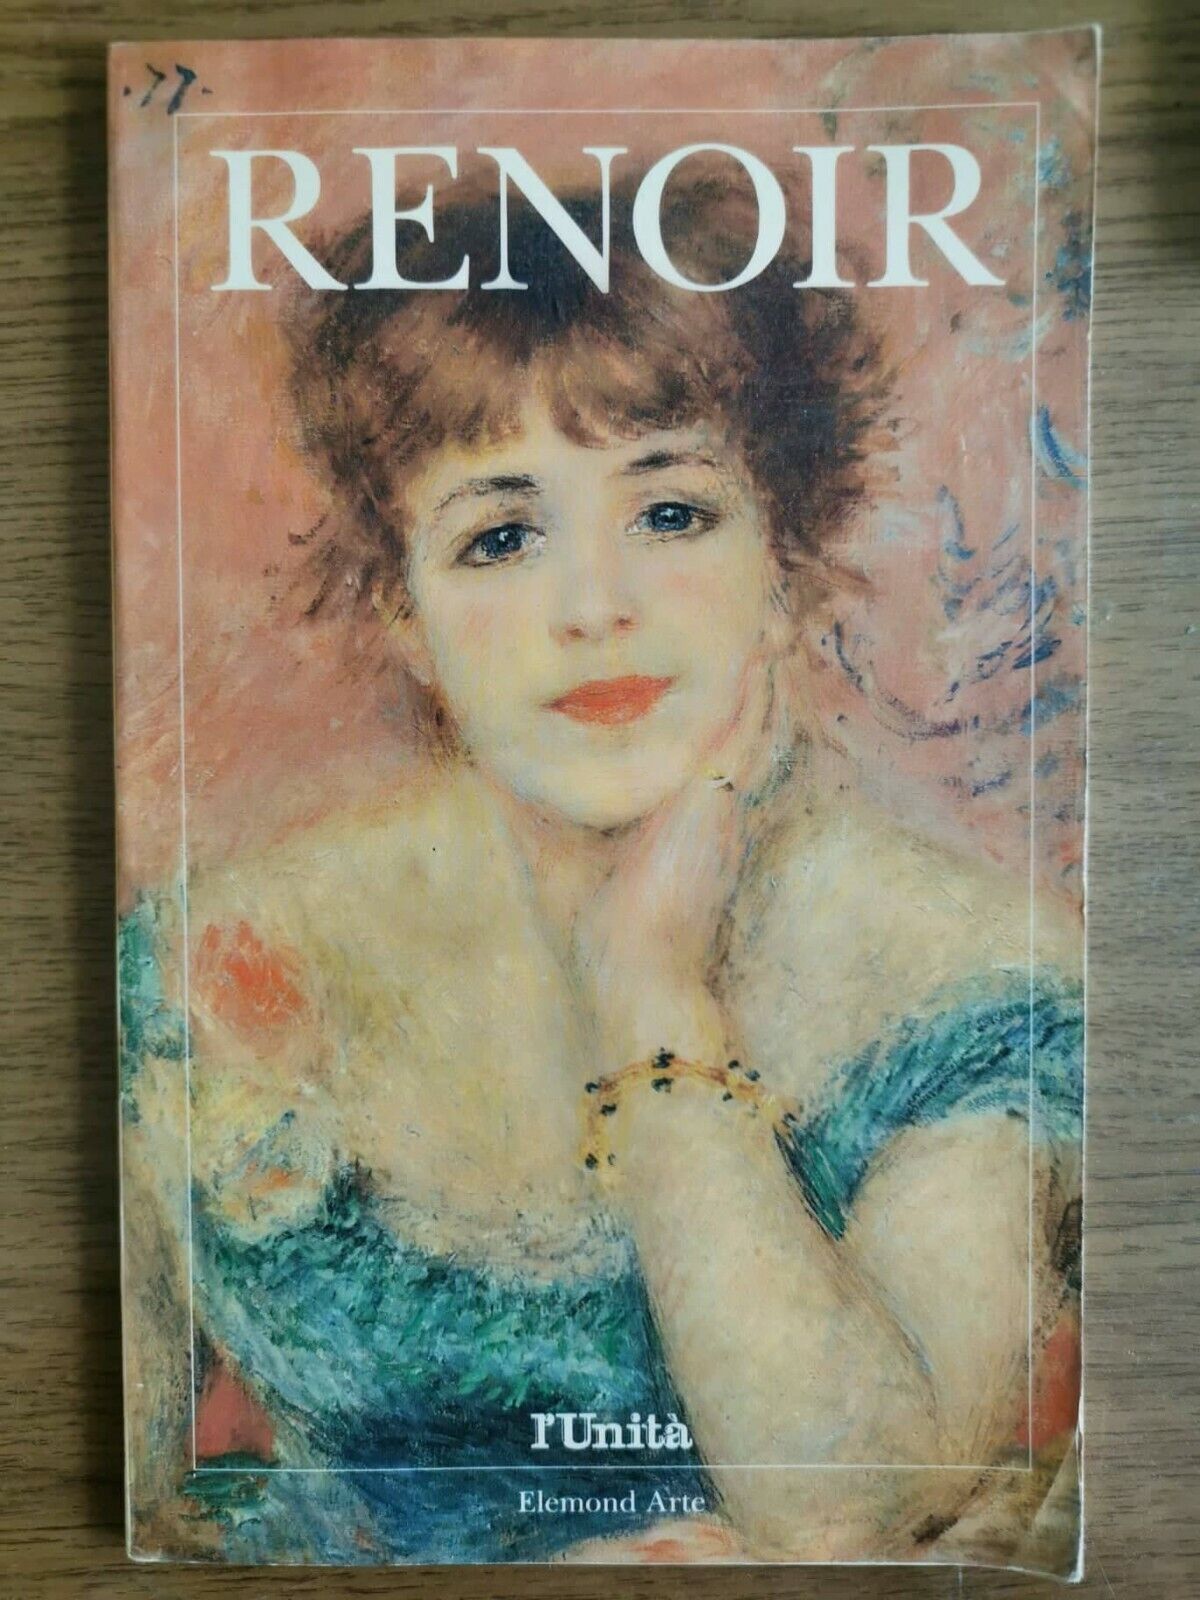 Renoir - M. Perosino - L'Unit? - 1992 - AR